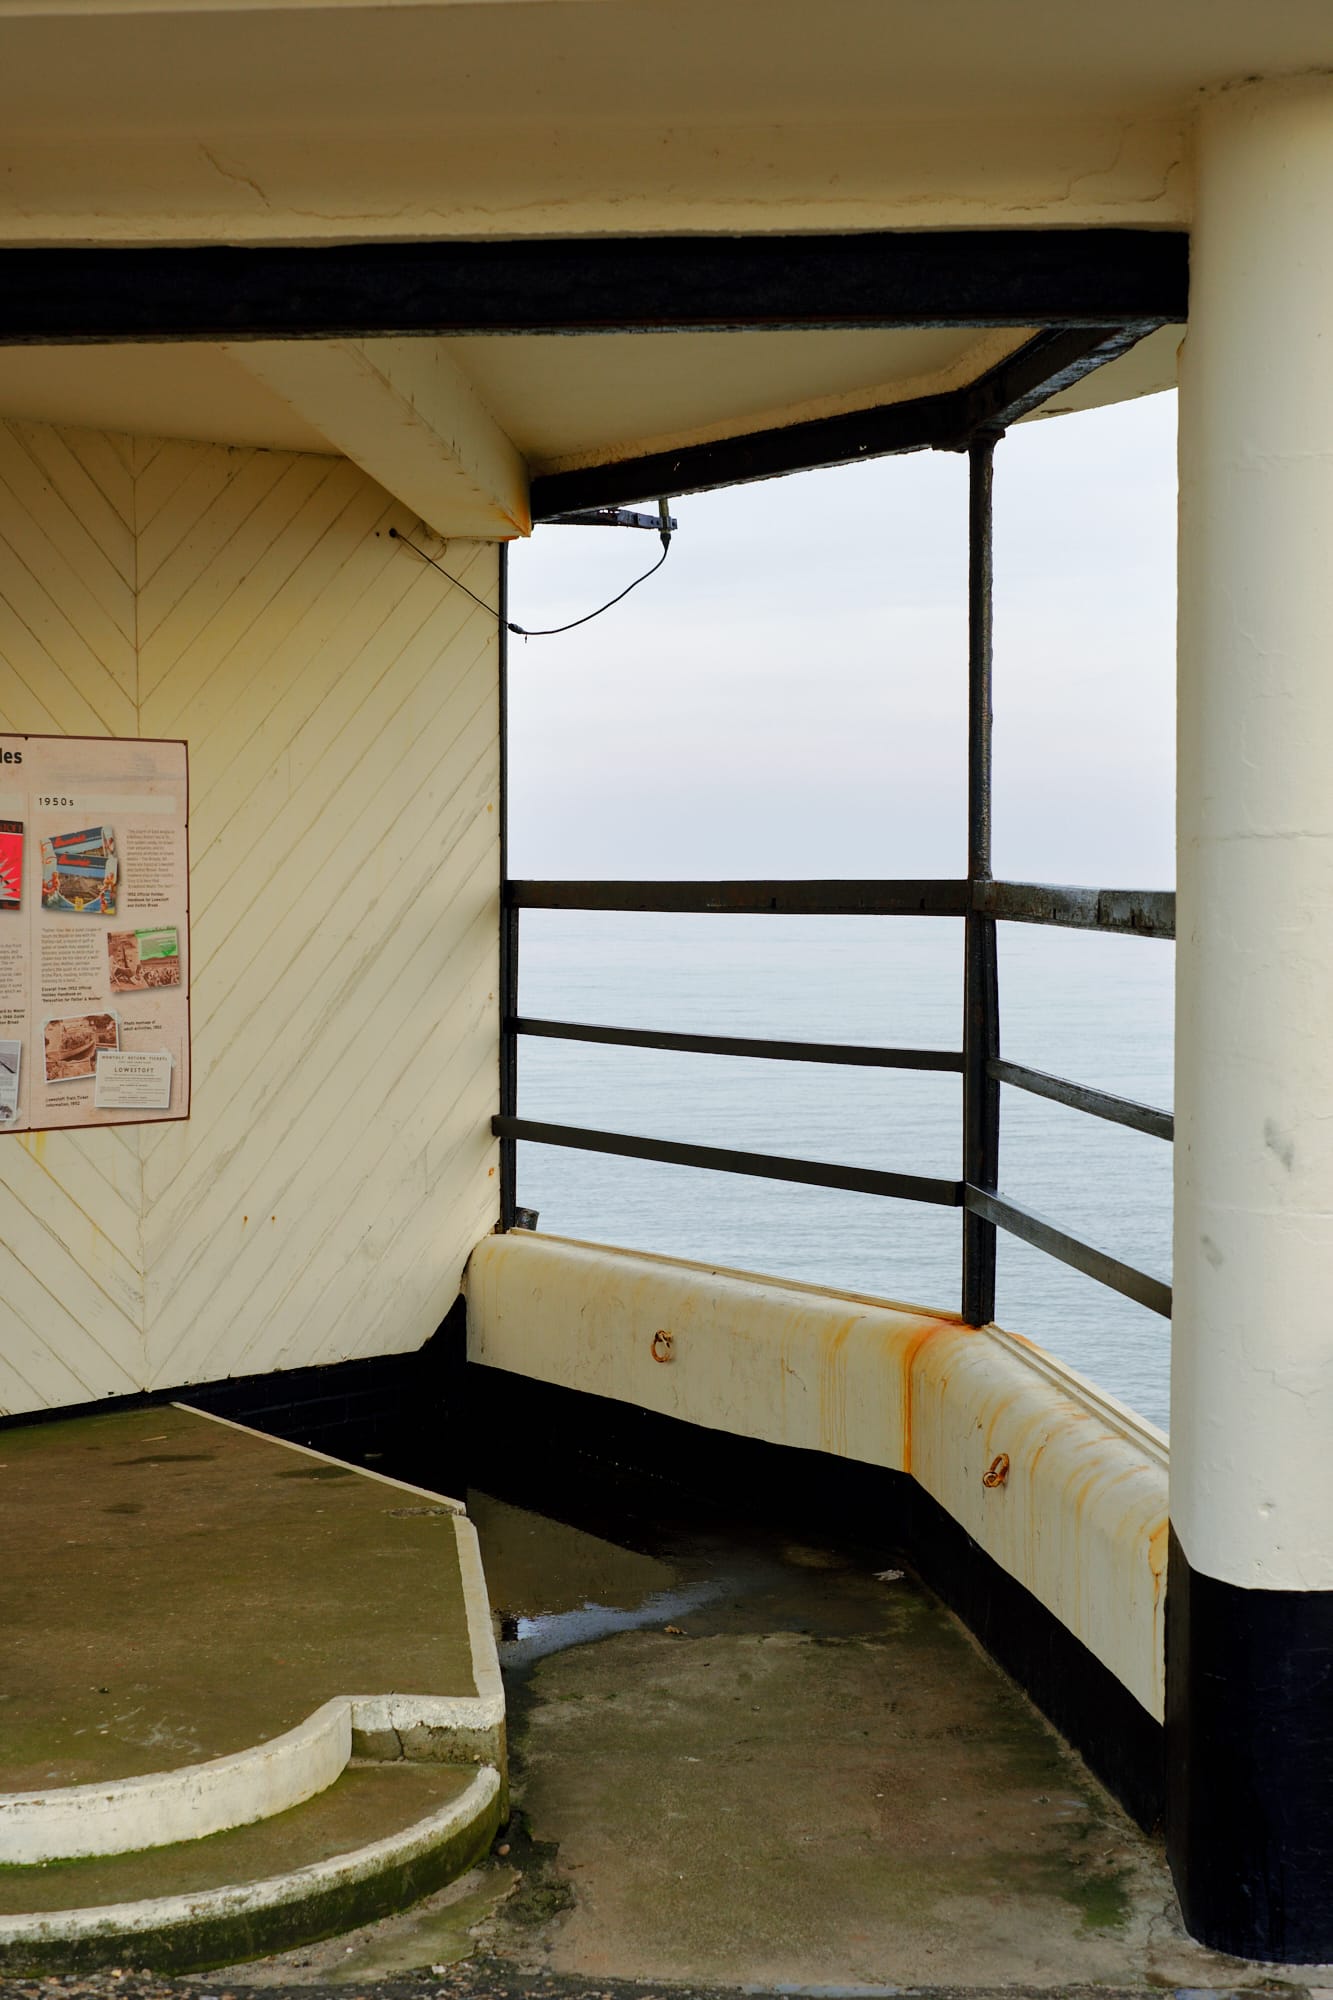 shelter atop sea wall